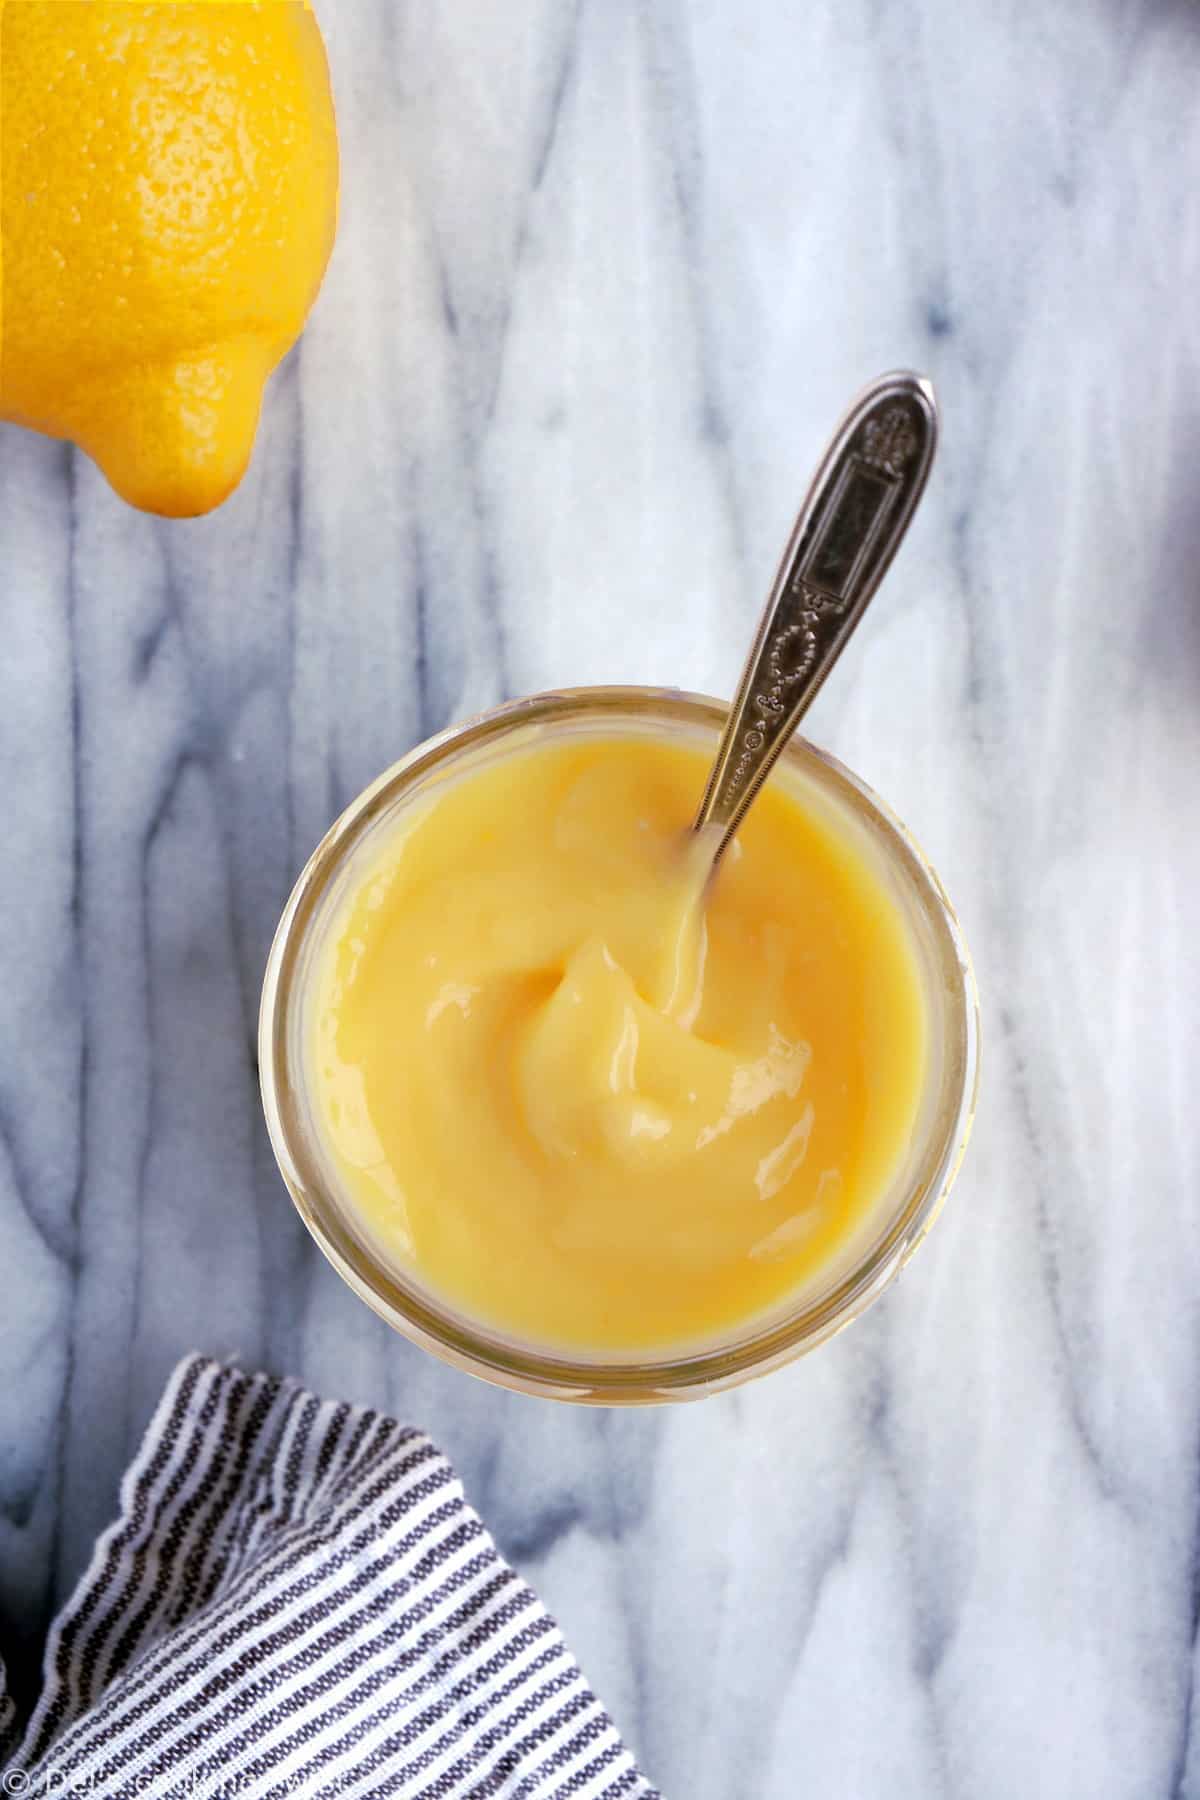 La crème au citron (lemon curd) maison est une recette toute simple à réaliser, avec seulement 4 ingrédients. Elle s'apprécie aussi bien en garniture de tartes et gâteaux, avec des crêpes et pancakes ou encore tout simplement avec des fruits rouges.